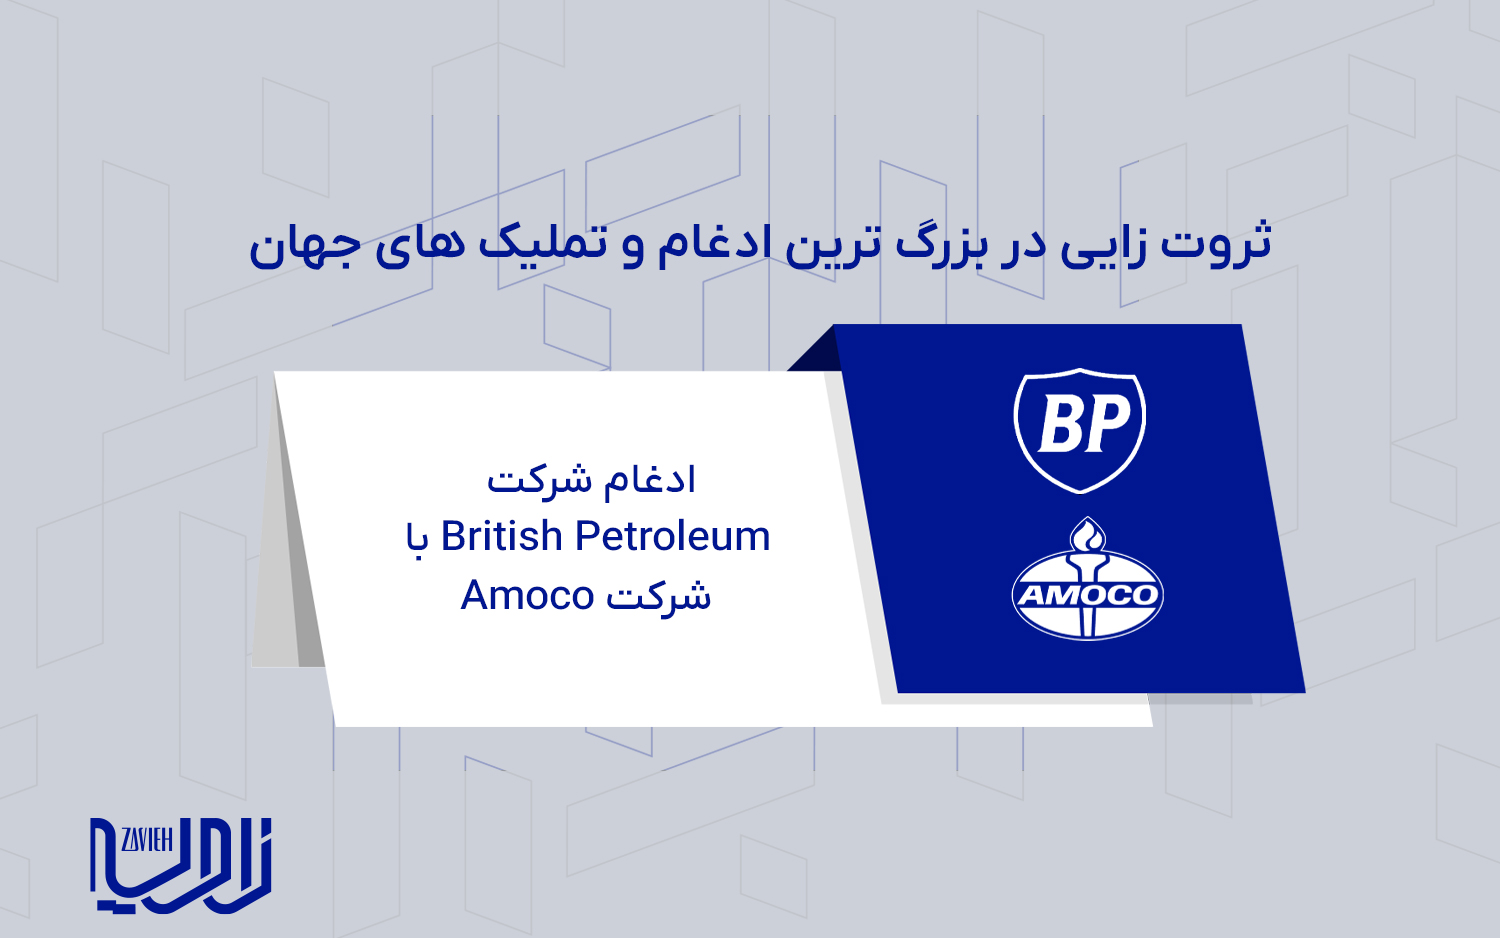 ادغام شرکت British Petroleum با شرکت Amoco